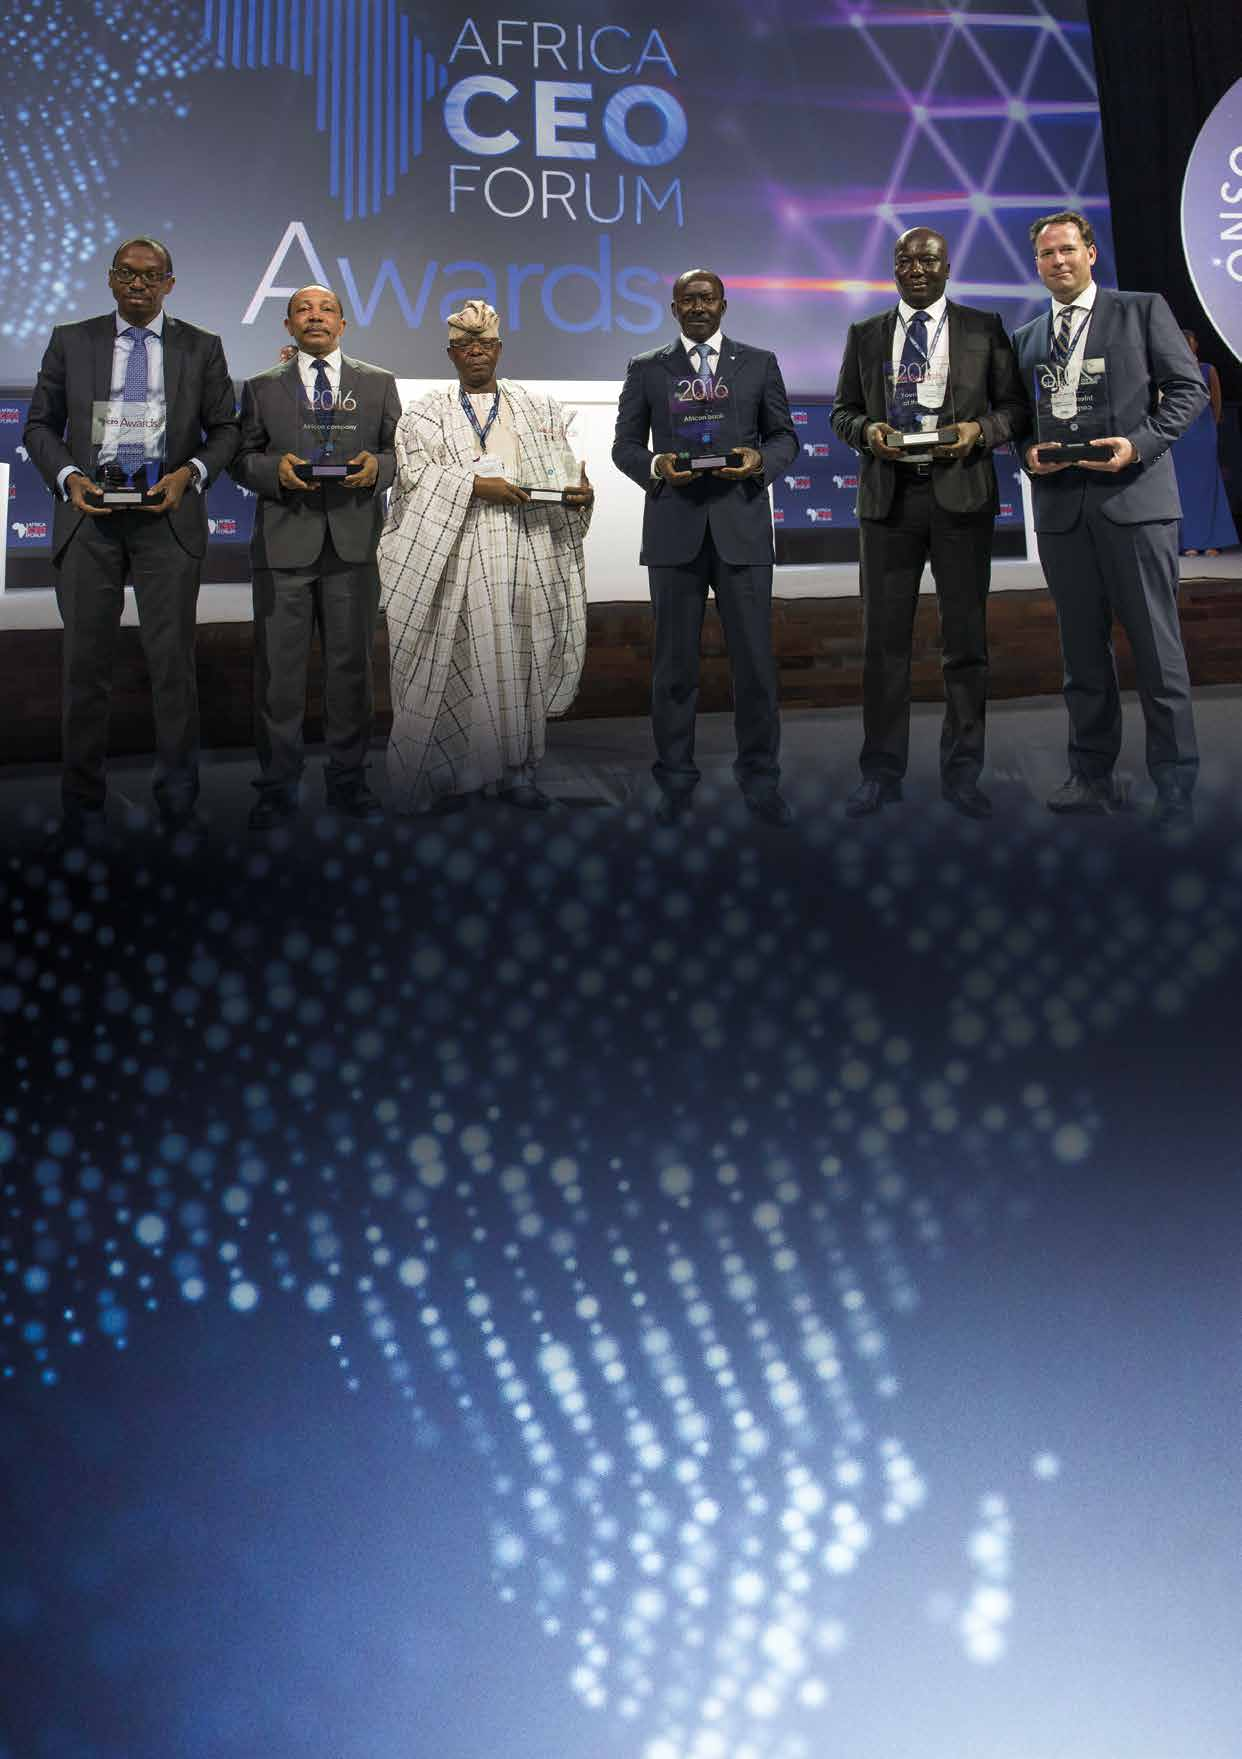 THE AFRICA CEO FORUM AWARDS Le rendez-vous de l excellence africaine Rendez-vous annuel des champions de la croissance africaine, les AFRICA CEO FORUM AWARDS sont un temps fort de chaque édition du